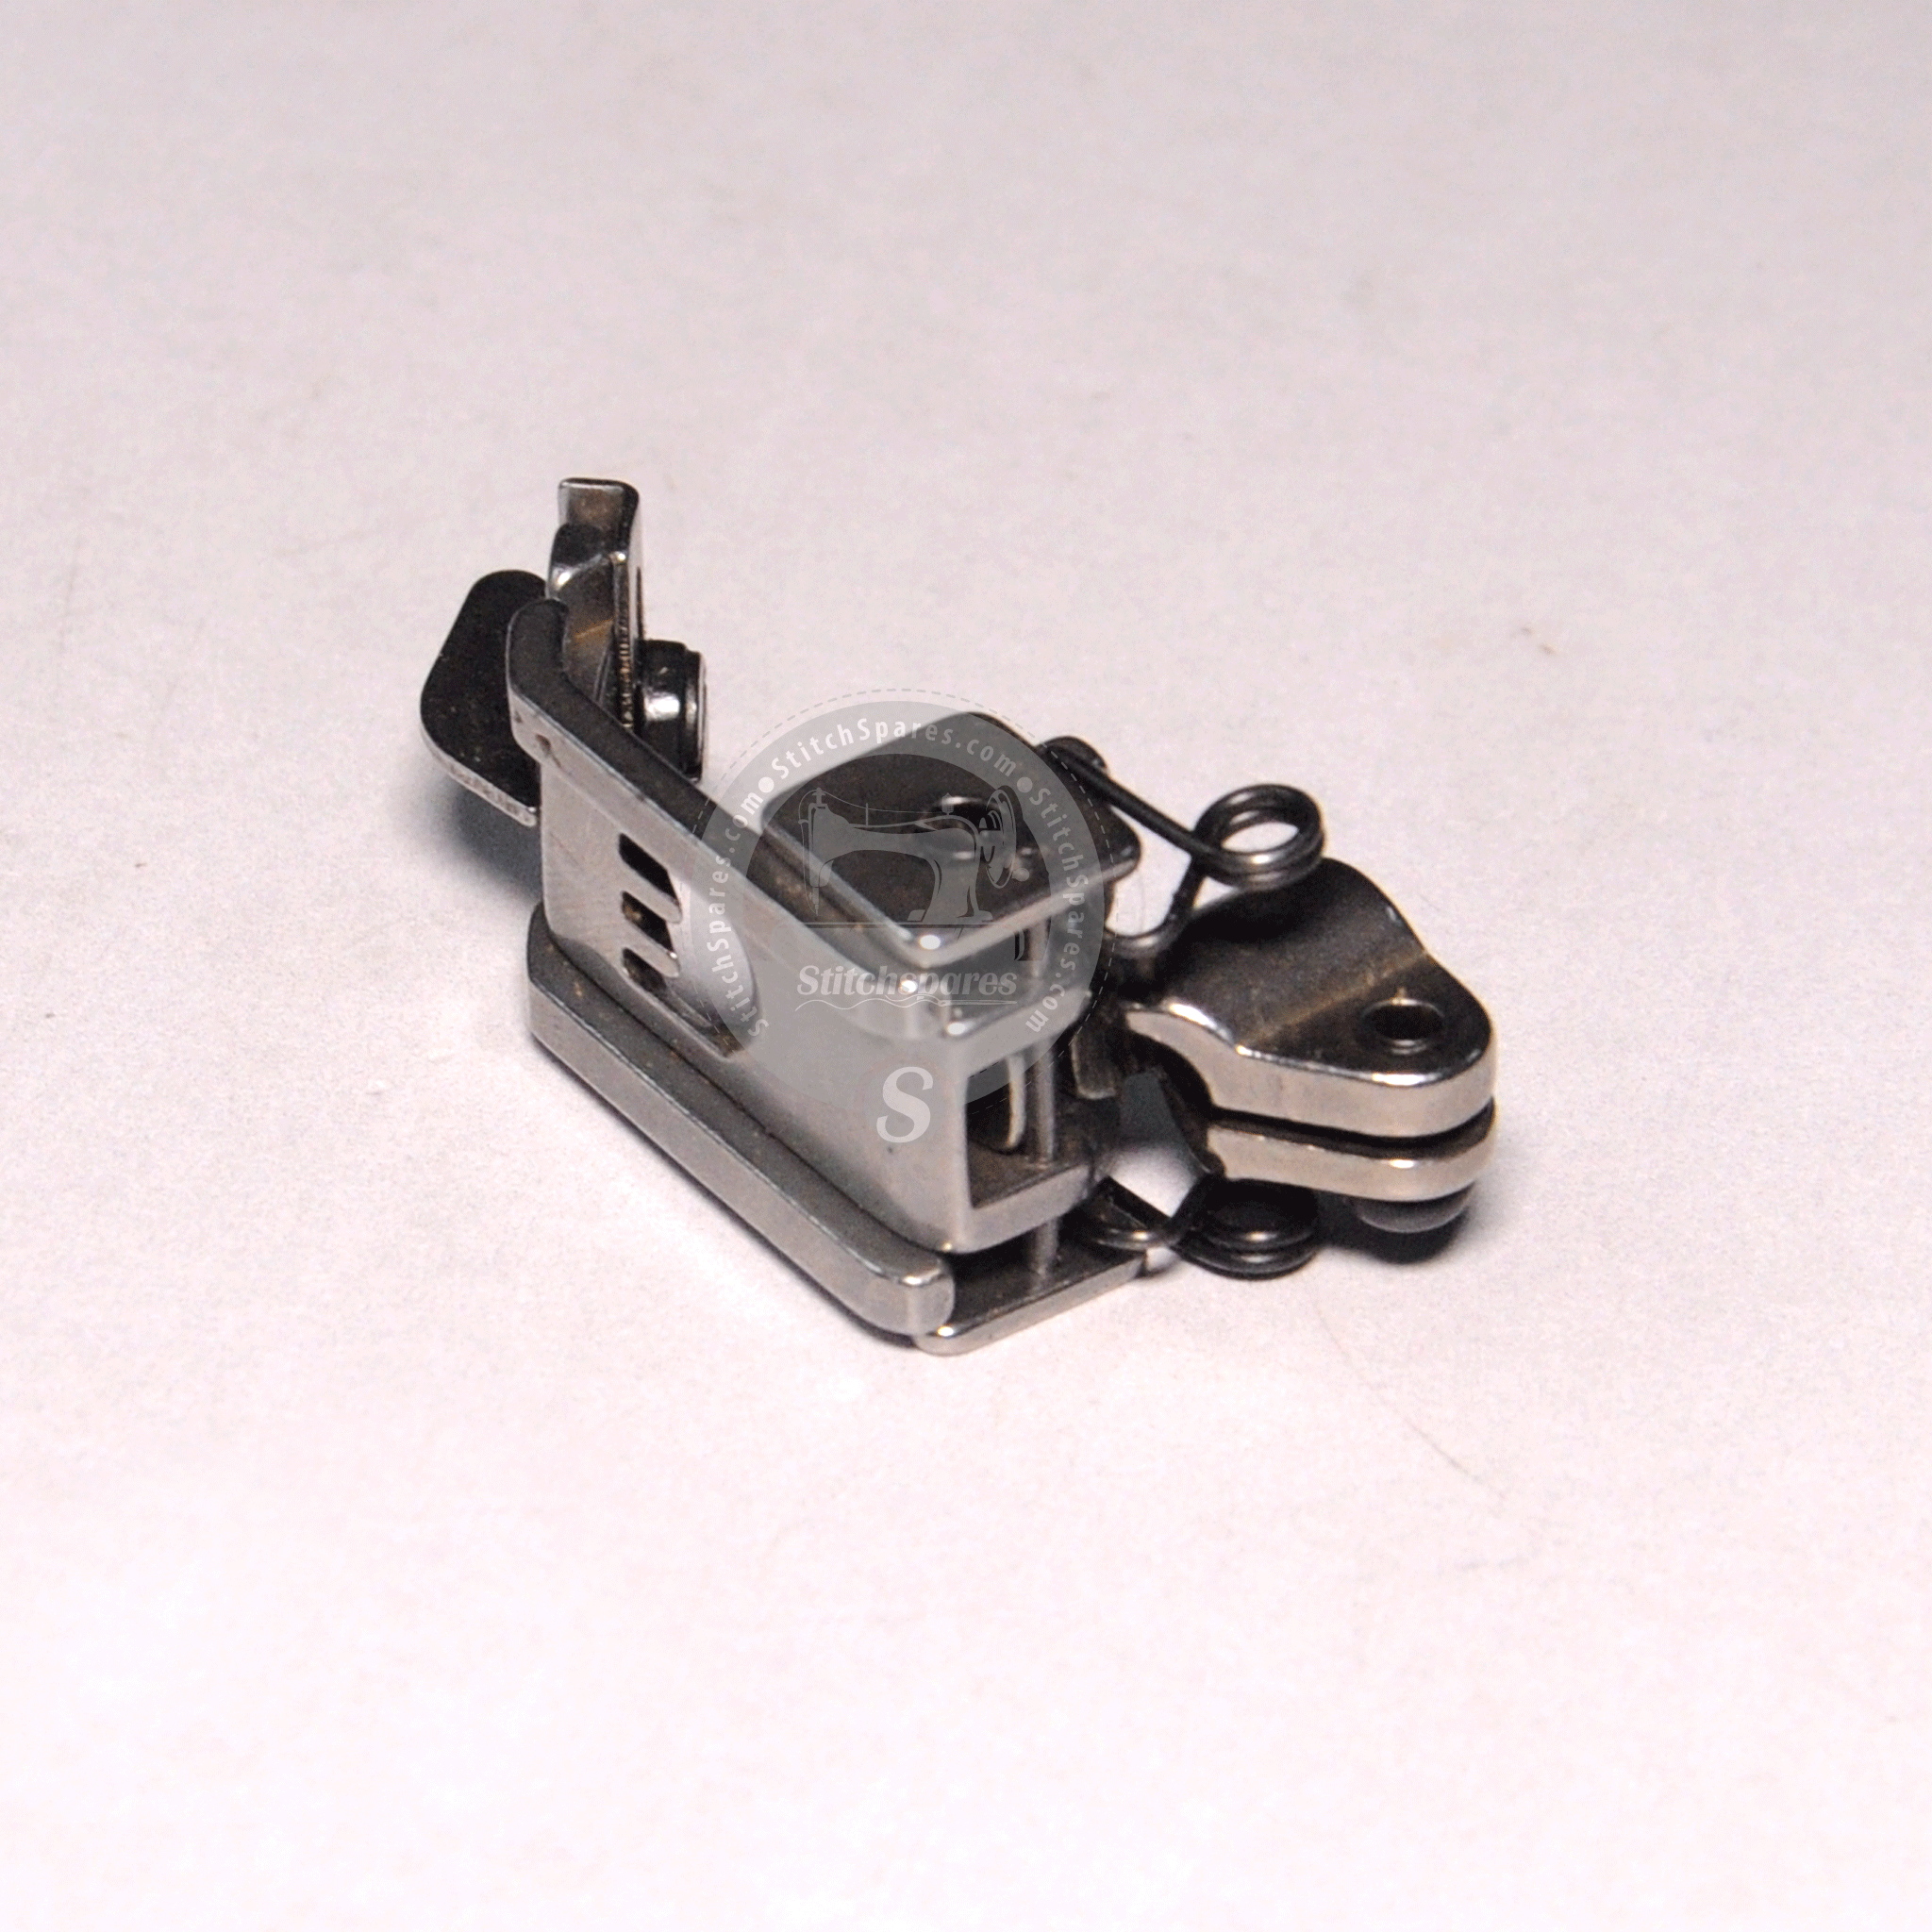 P0216P0217 Nähfuß Siruba F007 Flachbett Interlock (Flatlock) Maschine